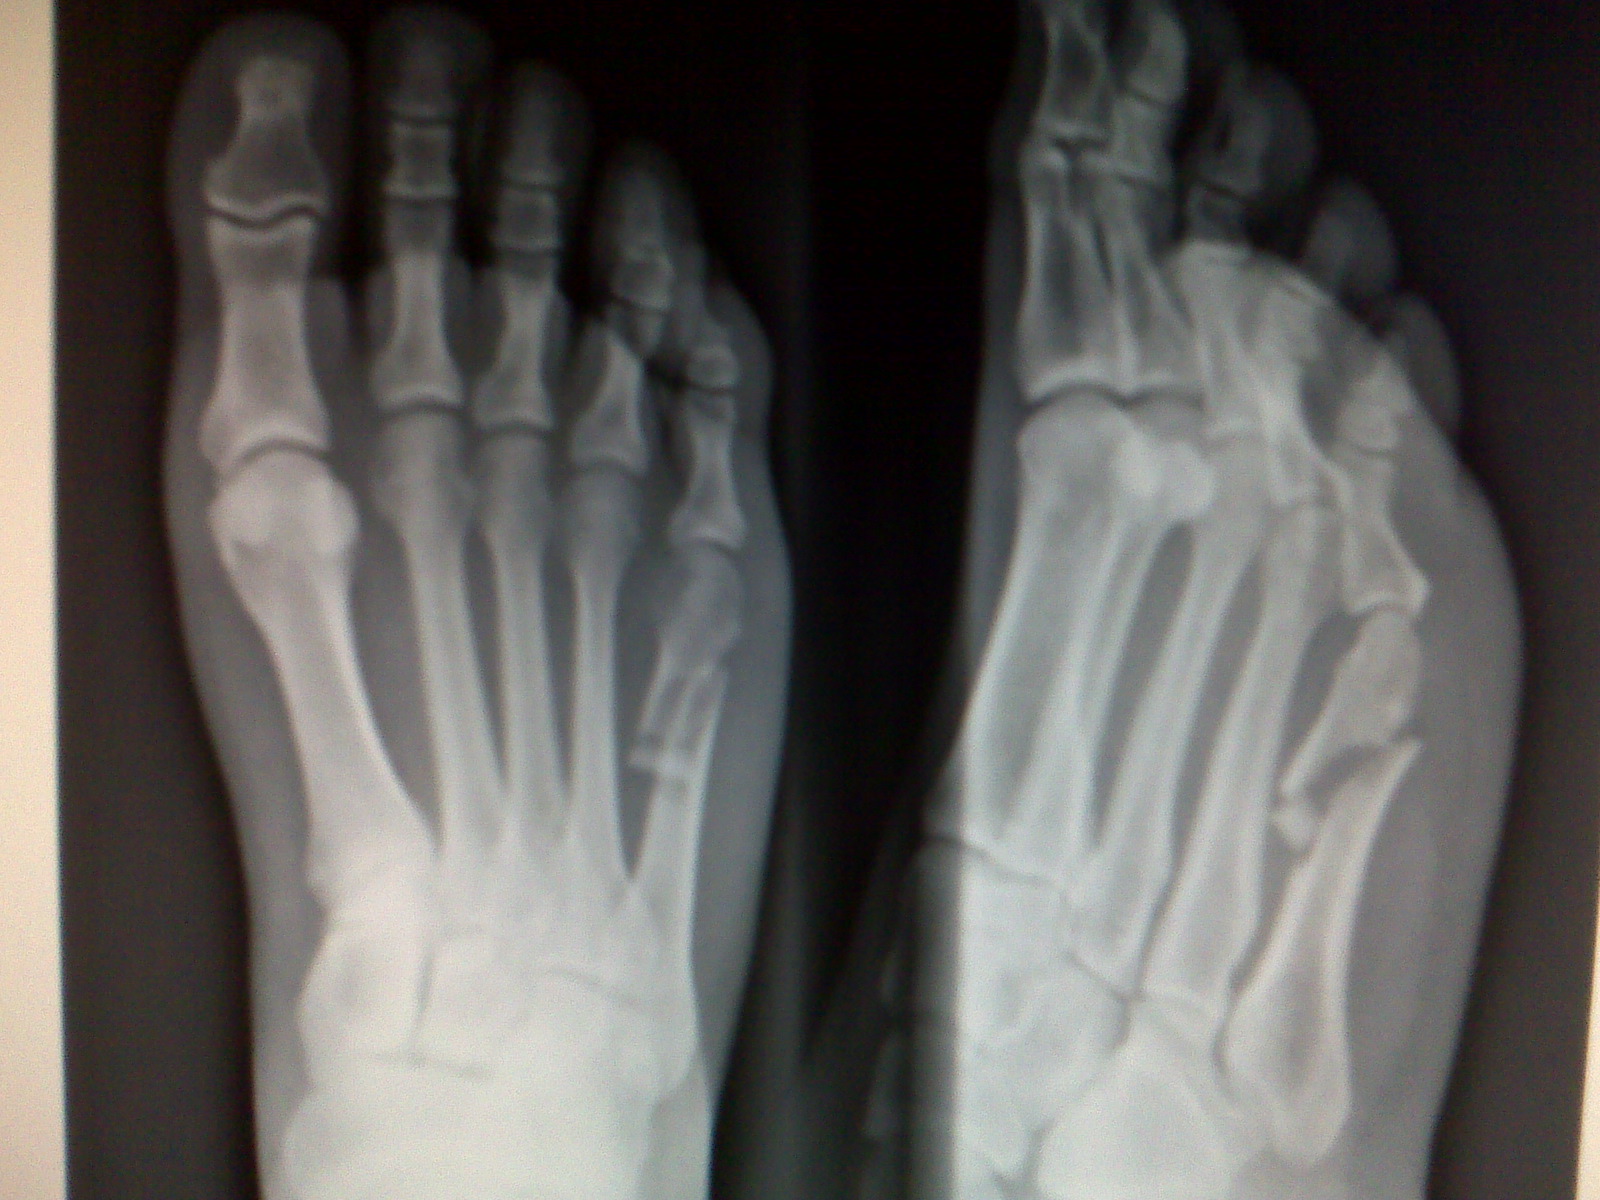 080425-lindas-broken-foot1.jpg